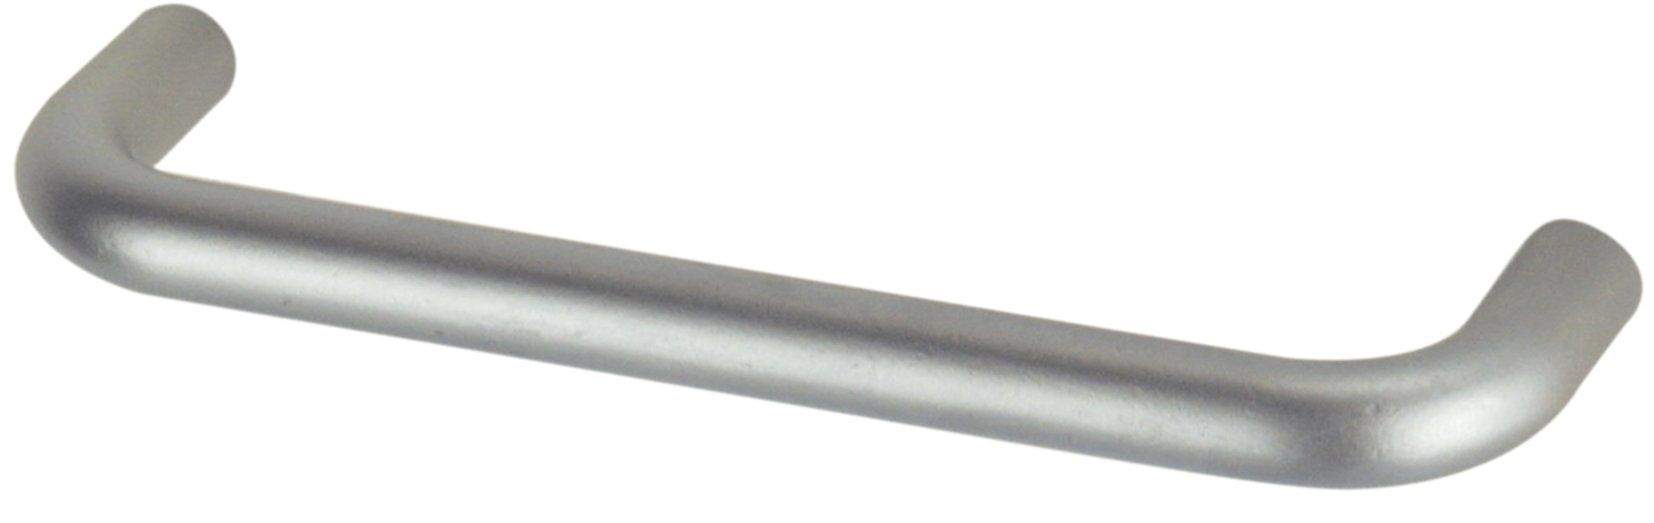 Maniglia in filo metallico con inserto in acciaio cromato, L.136 mm, P.8 mm, P.28 mm, interasse 128 mm, 1 pezzo con viti.